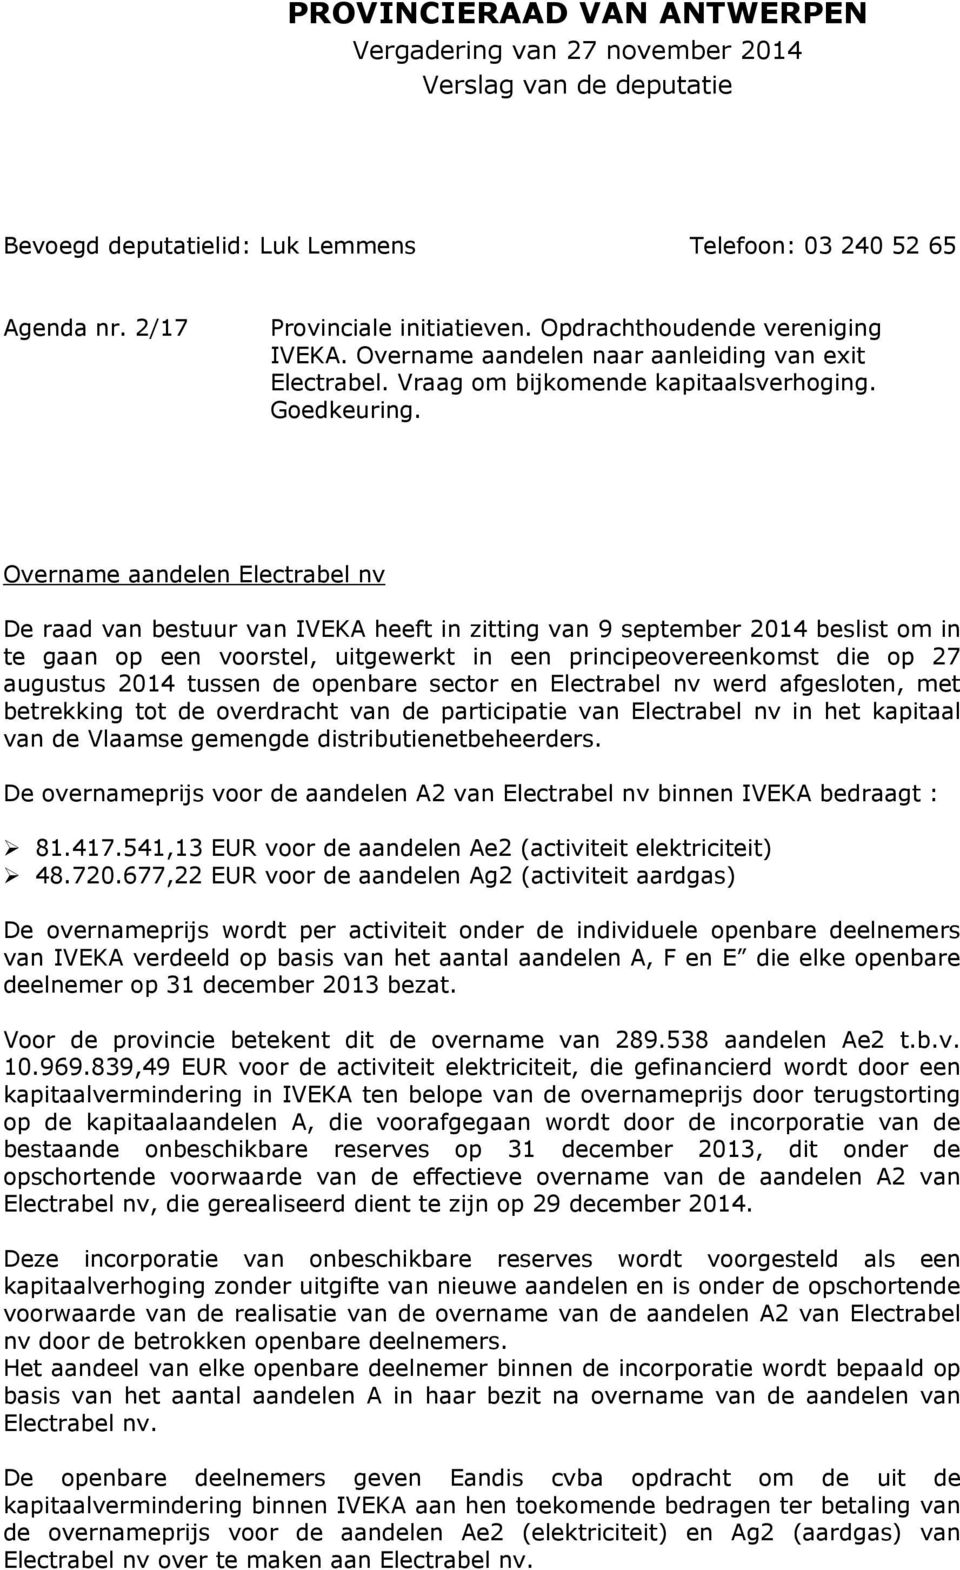 Overname aandelen Electrabel nv De raad van bestuur van IVEKA heeft in zitting van 9 september 2014 beslist om in te gaan op een voorstel, uitgewerkt in een principeovereenkomst die op 27 augustus